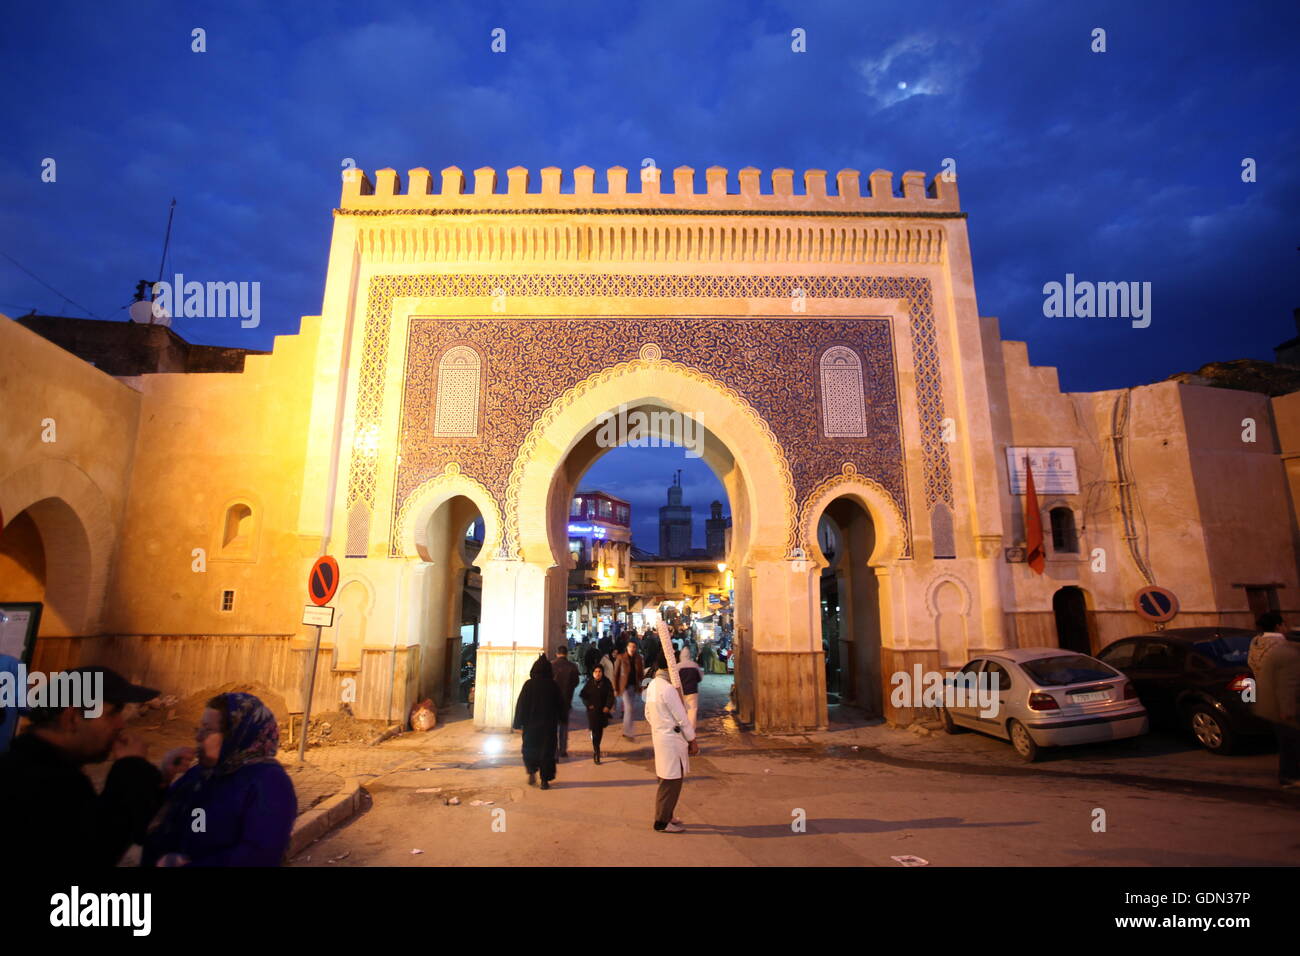 Das Blaue Tor am Bab Bou Jeloud Platz auf dem Souq in der Medina oder Altstadt di Fes im Norden von Marokko in Nordafrika. Foto Stock